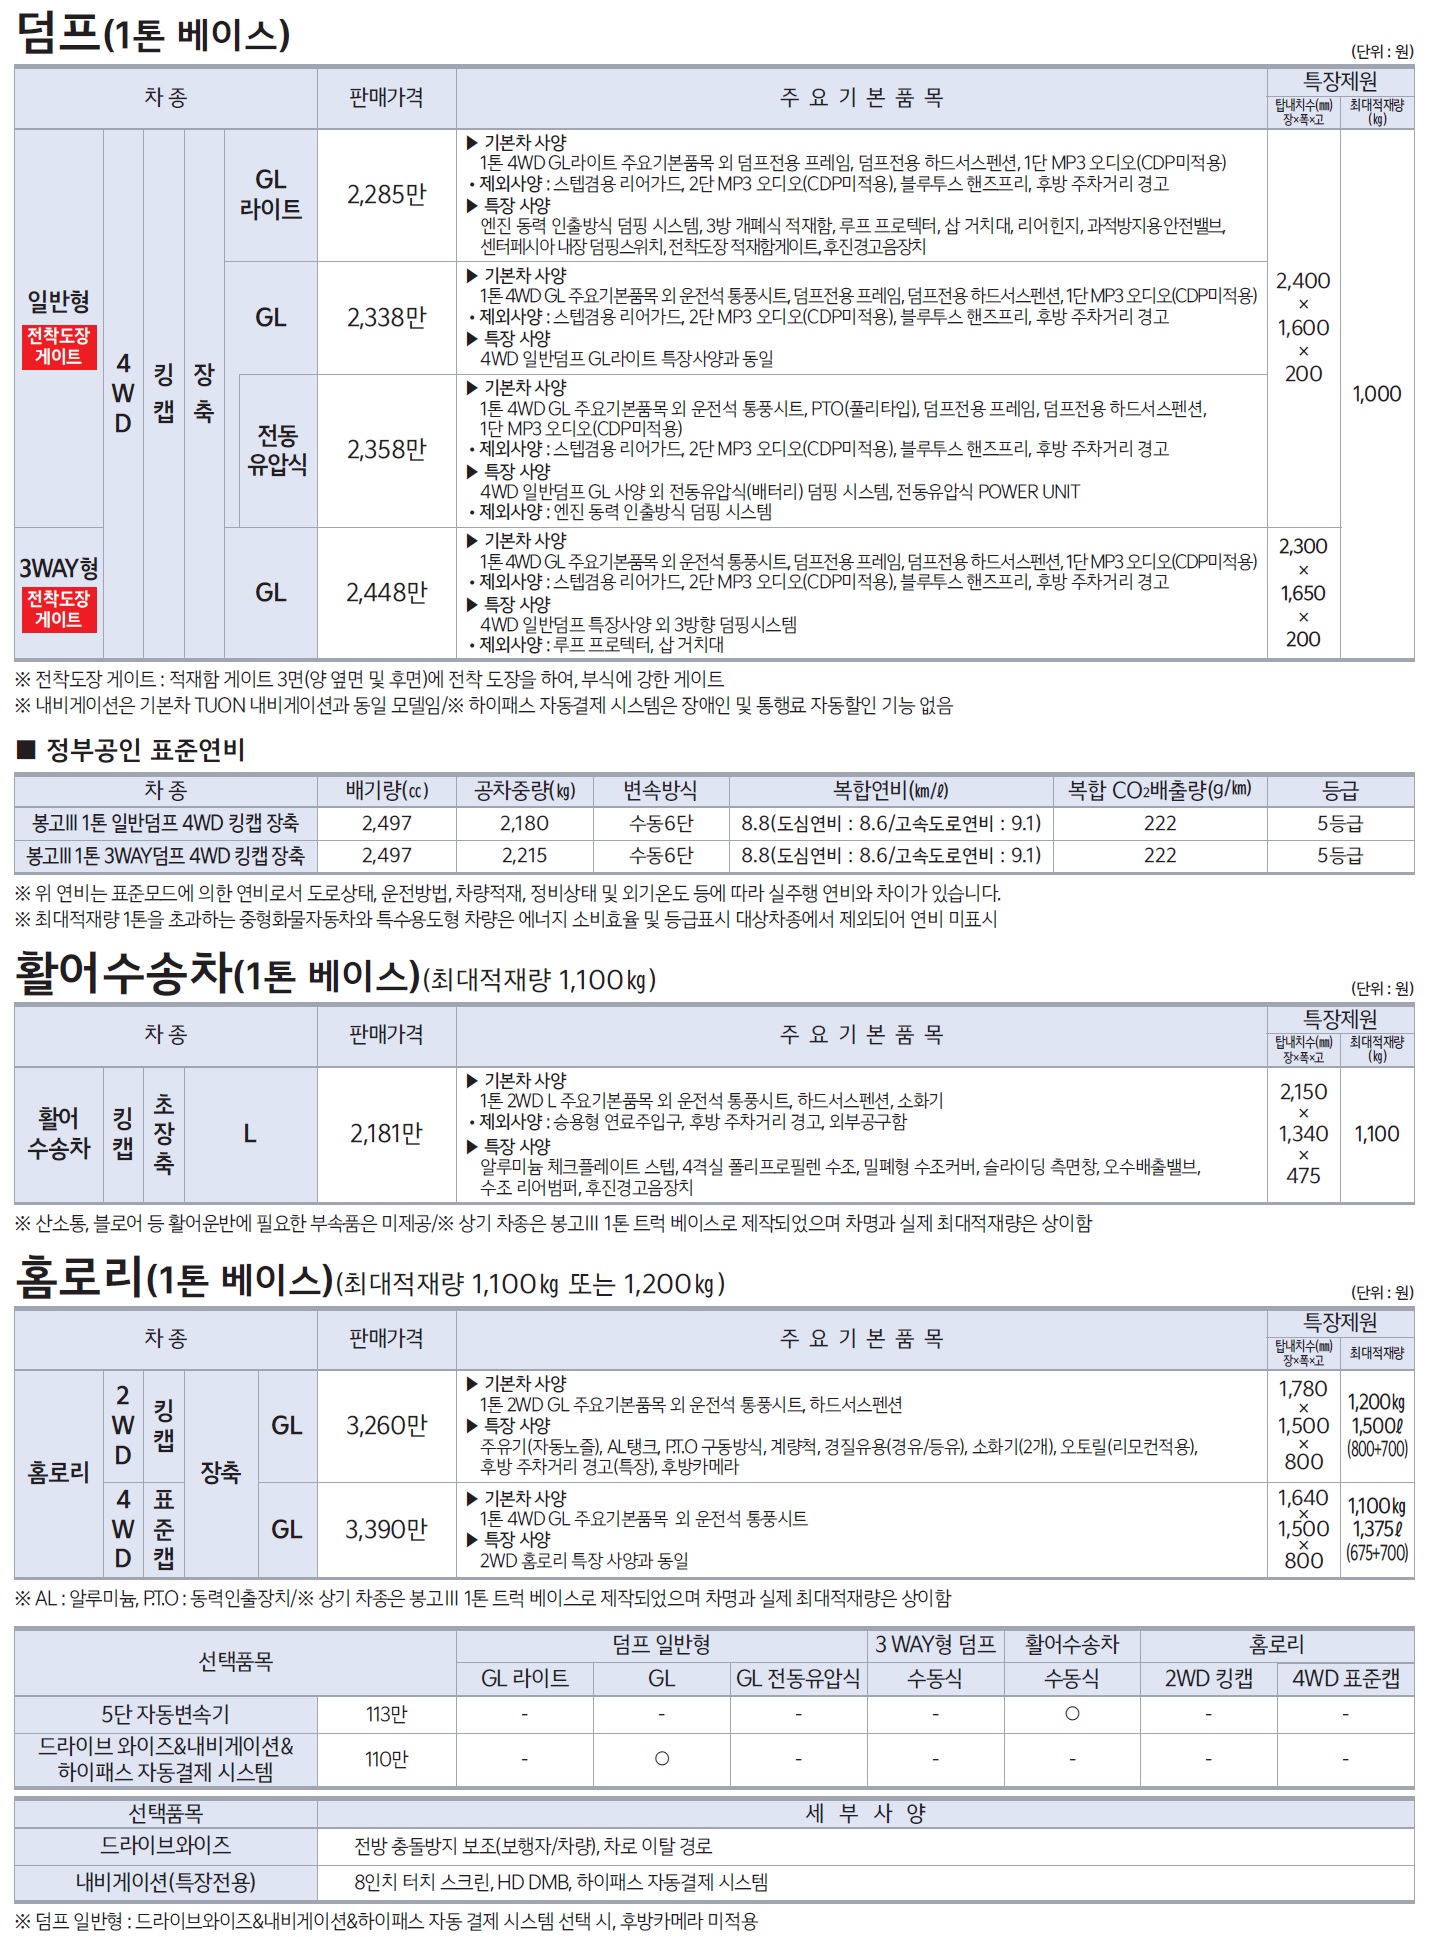 봉고3 특장차 가격표 - 2021년 02월 -7.jpg